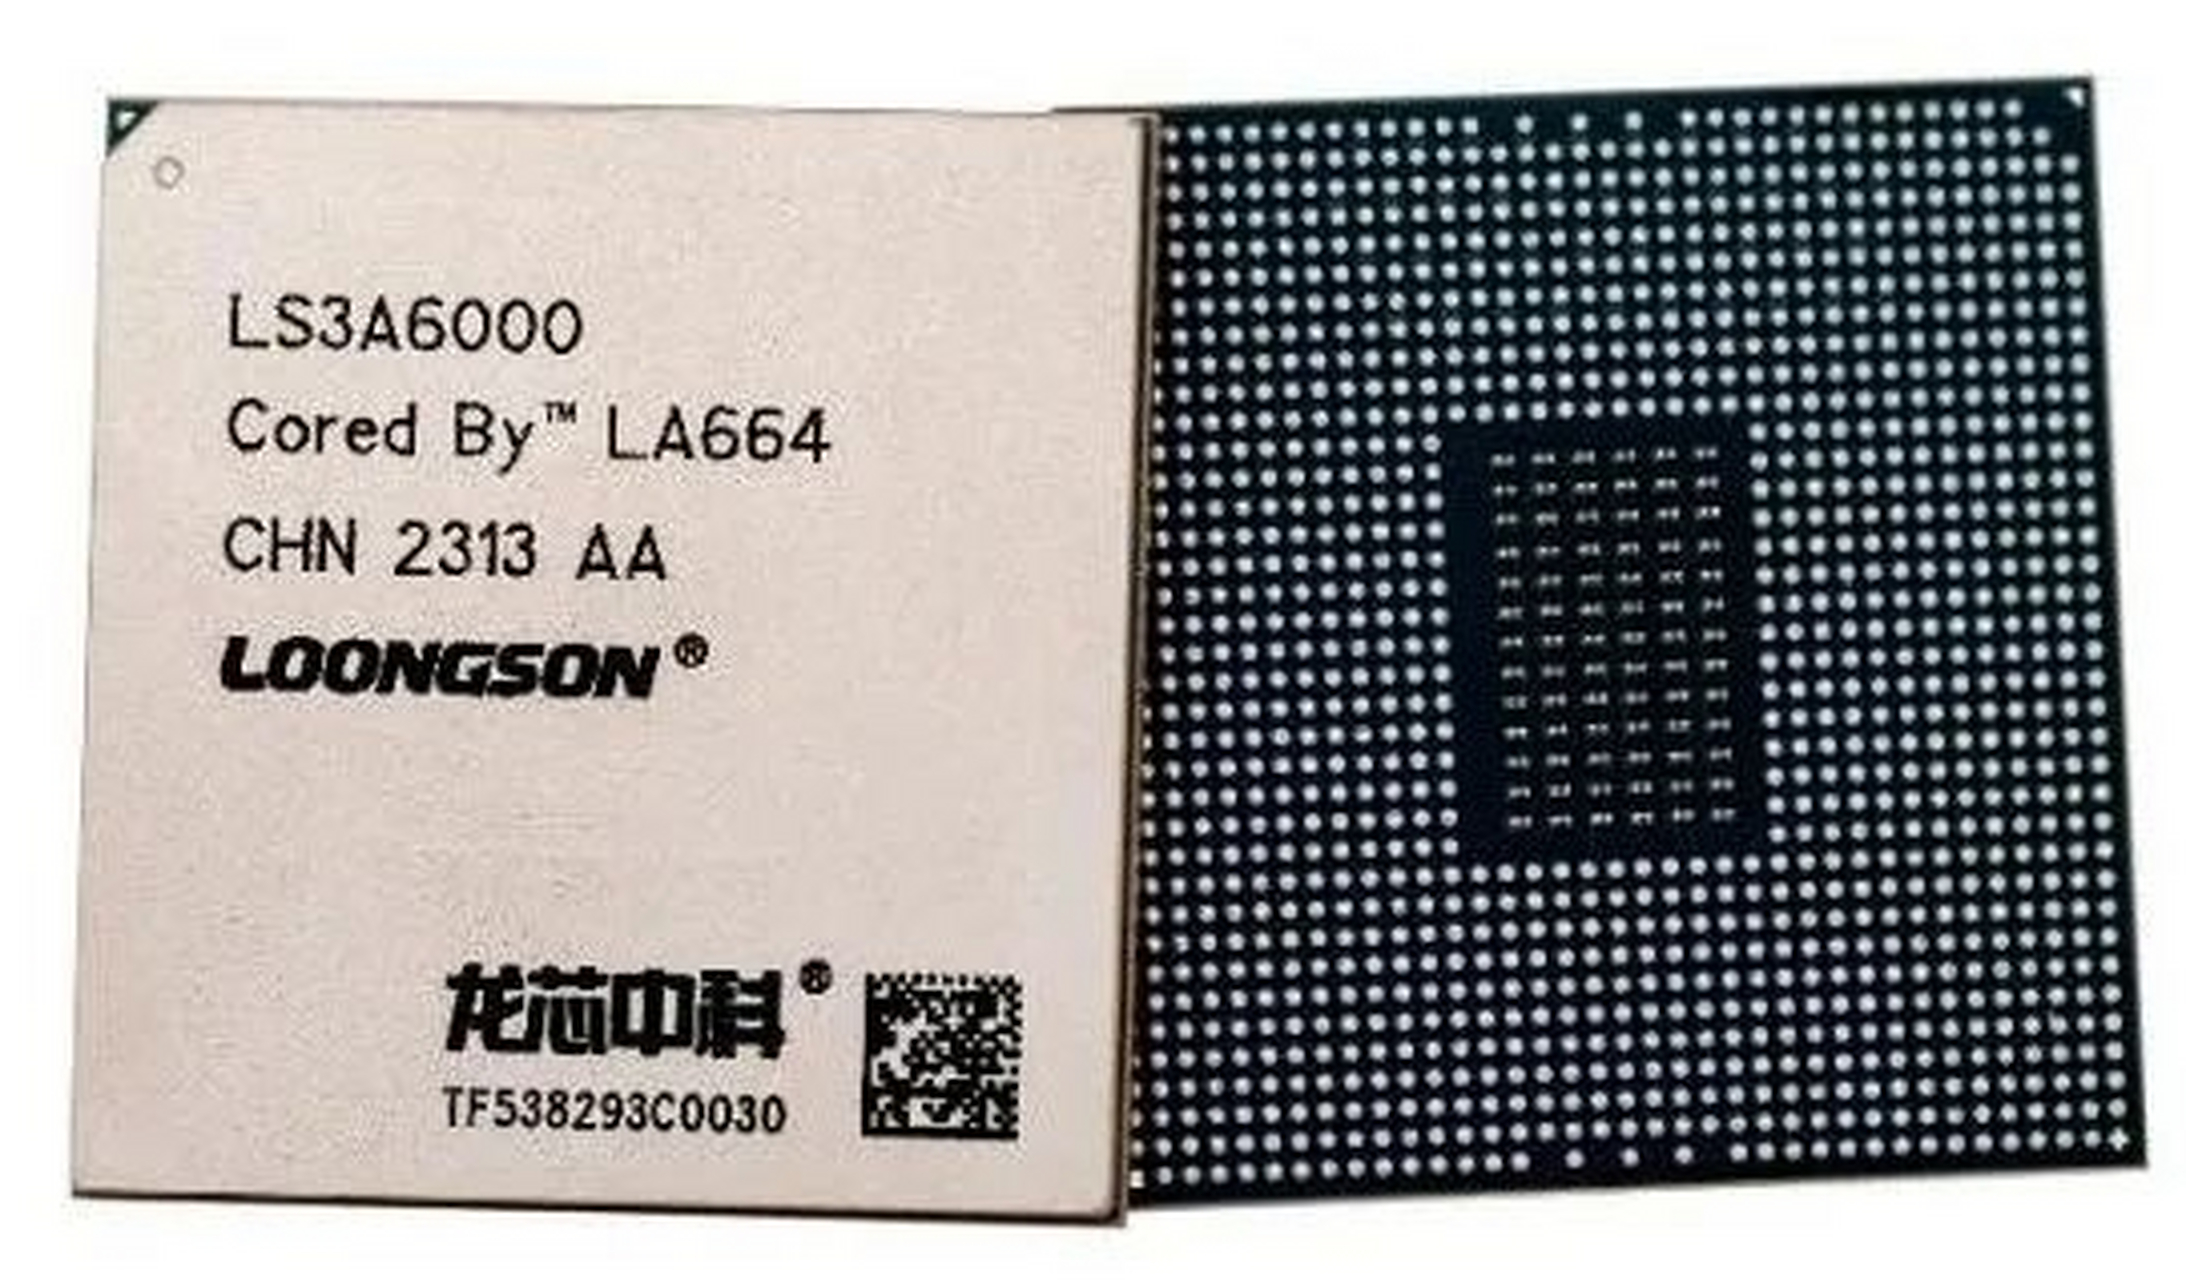 龙芯中科基于龙架构的新一代四核处理器龙芯3a6000流片成功,总体性能